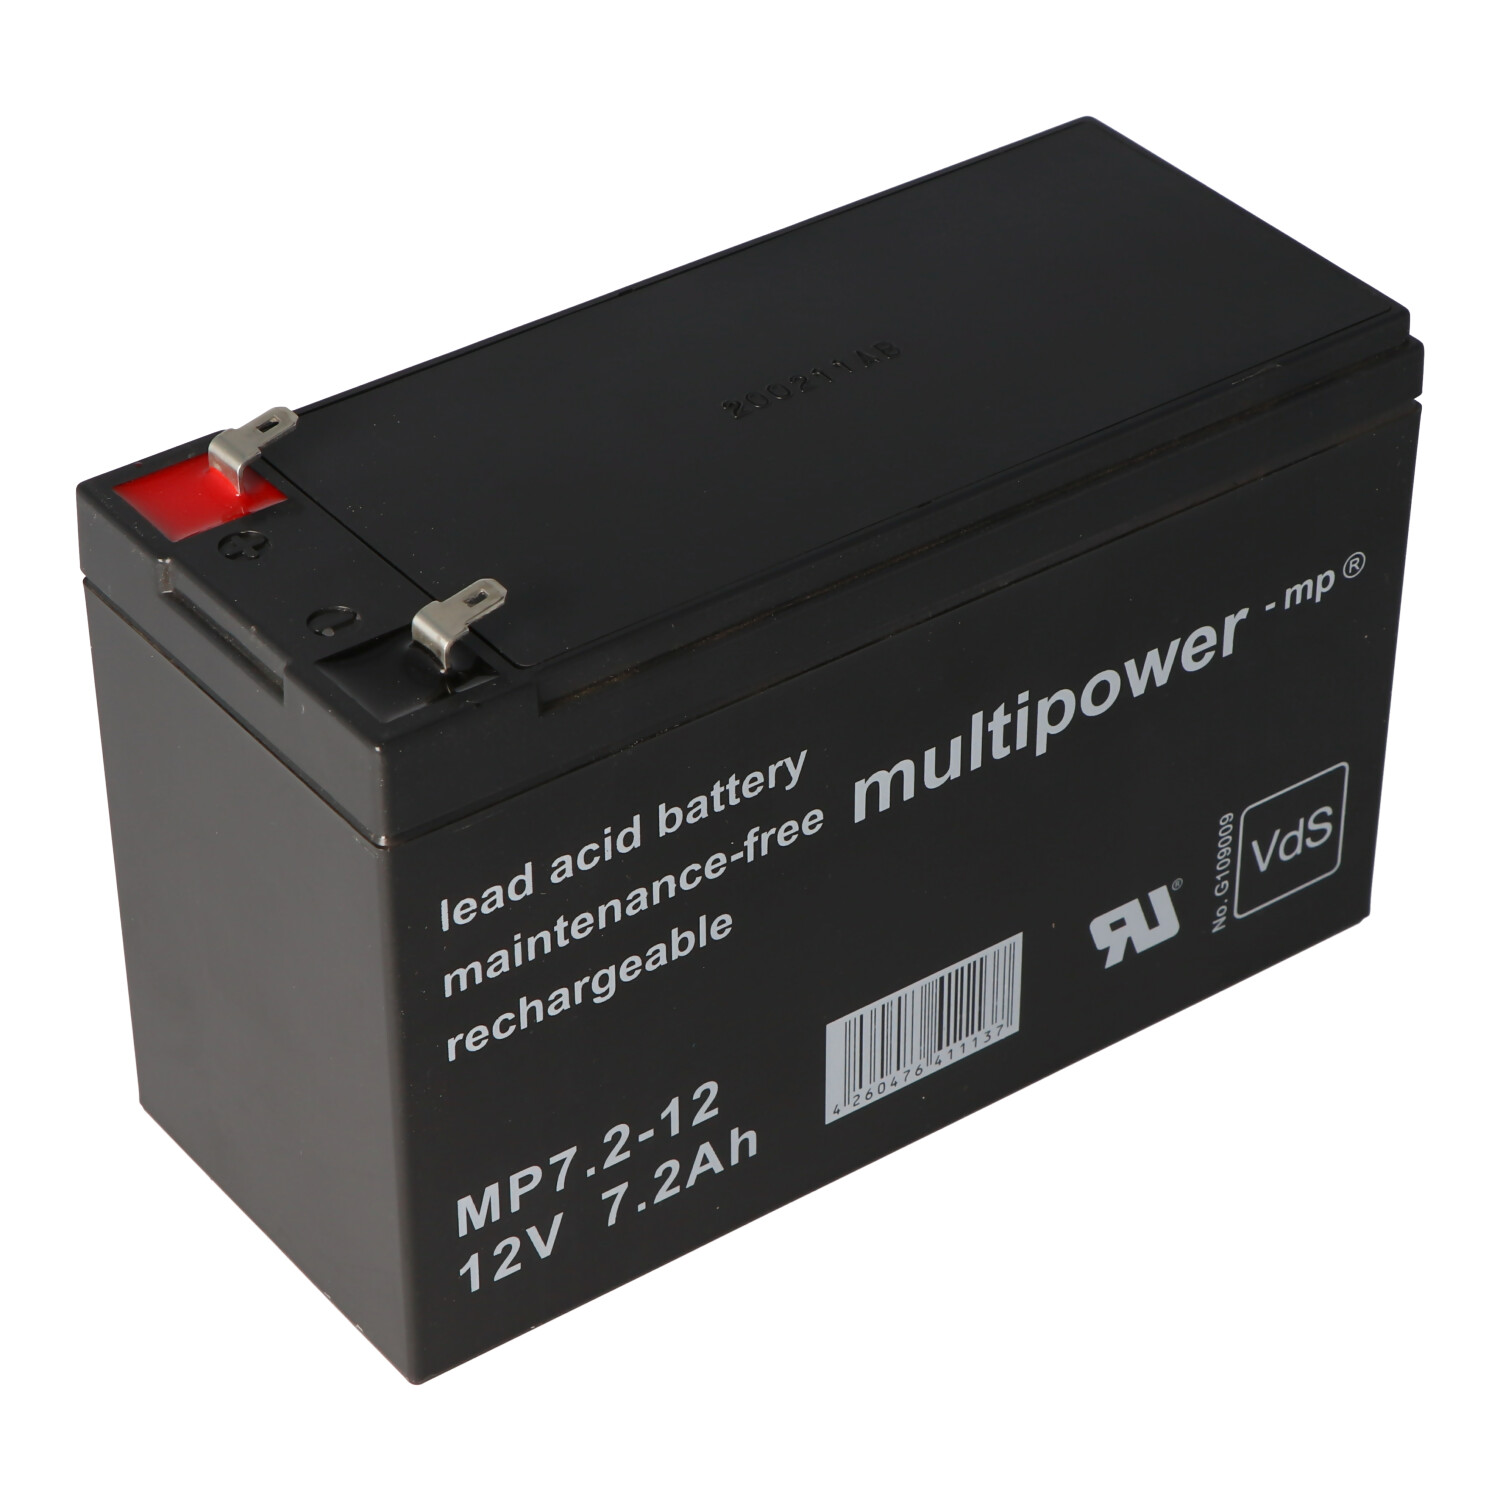 MULTIPOWER Multipower MP7.2-12 PB Akku Zulassung 7200 - Blei mit 4,8mm mAh 12 Volt 7,2Ah Pb VDS Steckkontakte, Bleiakku